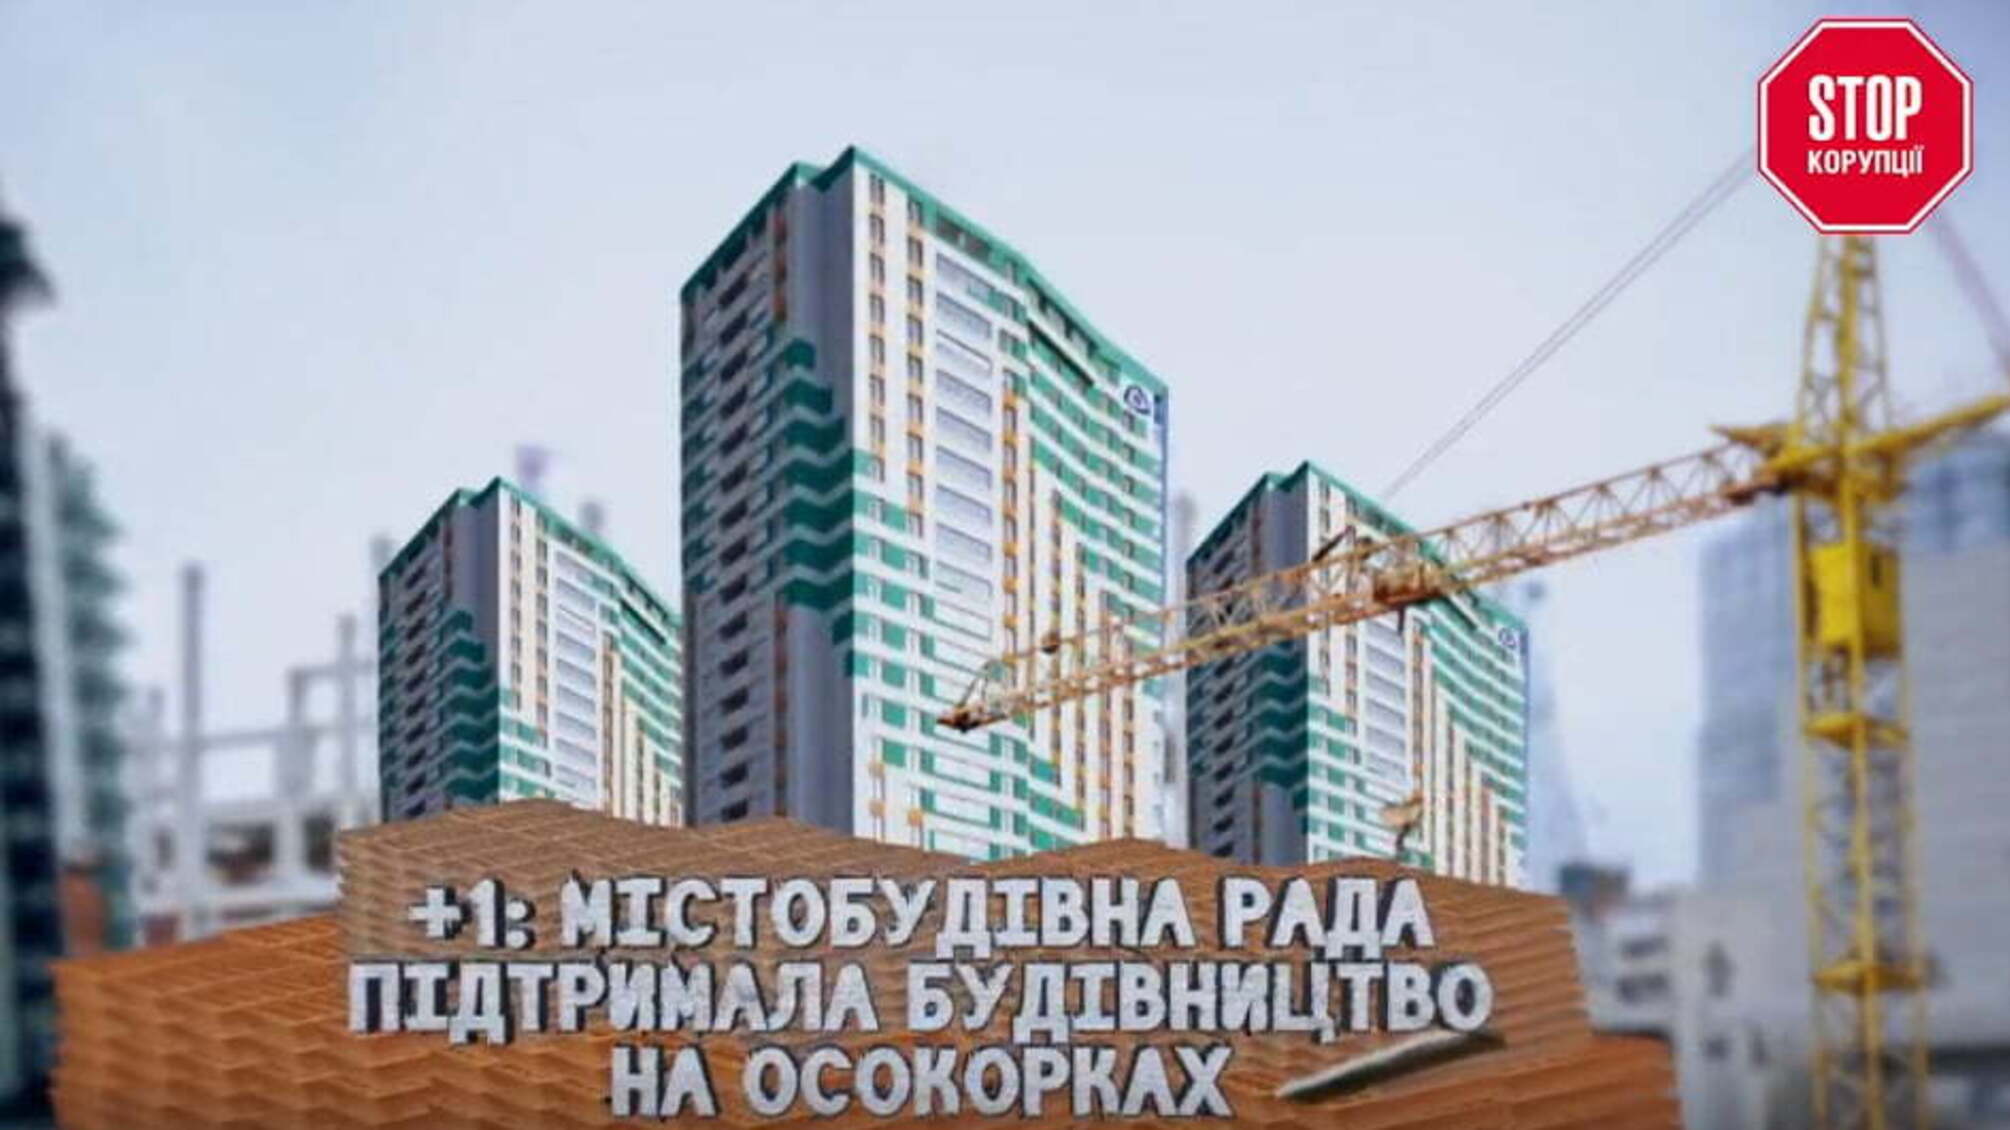 +1: Містобудівна рада підтримала будівництво на Осокорках